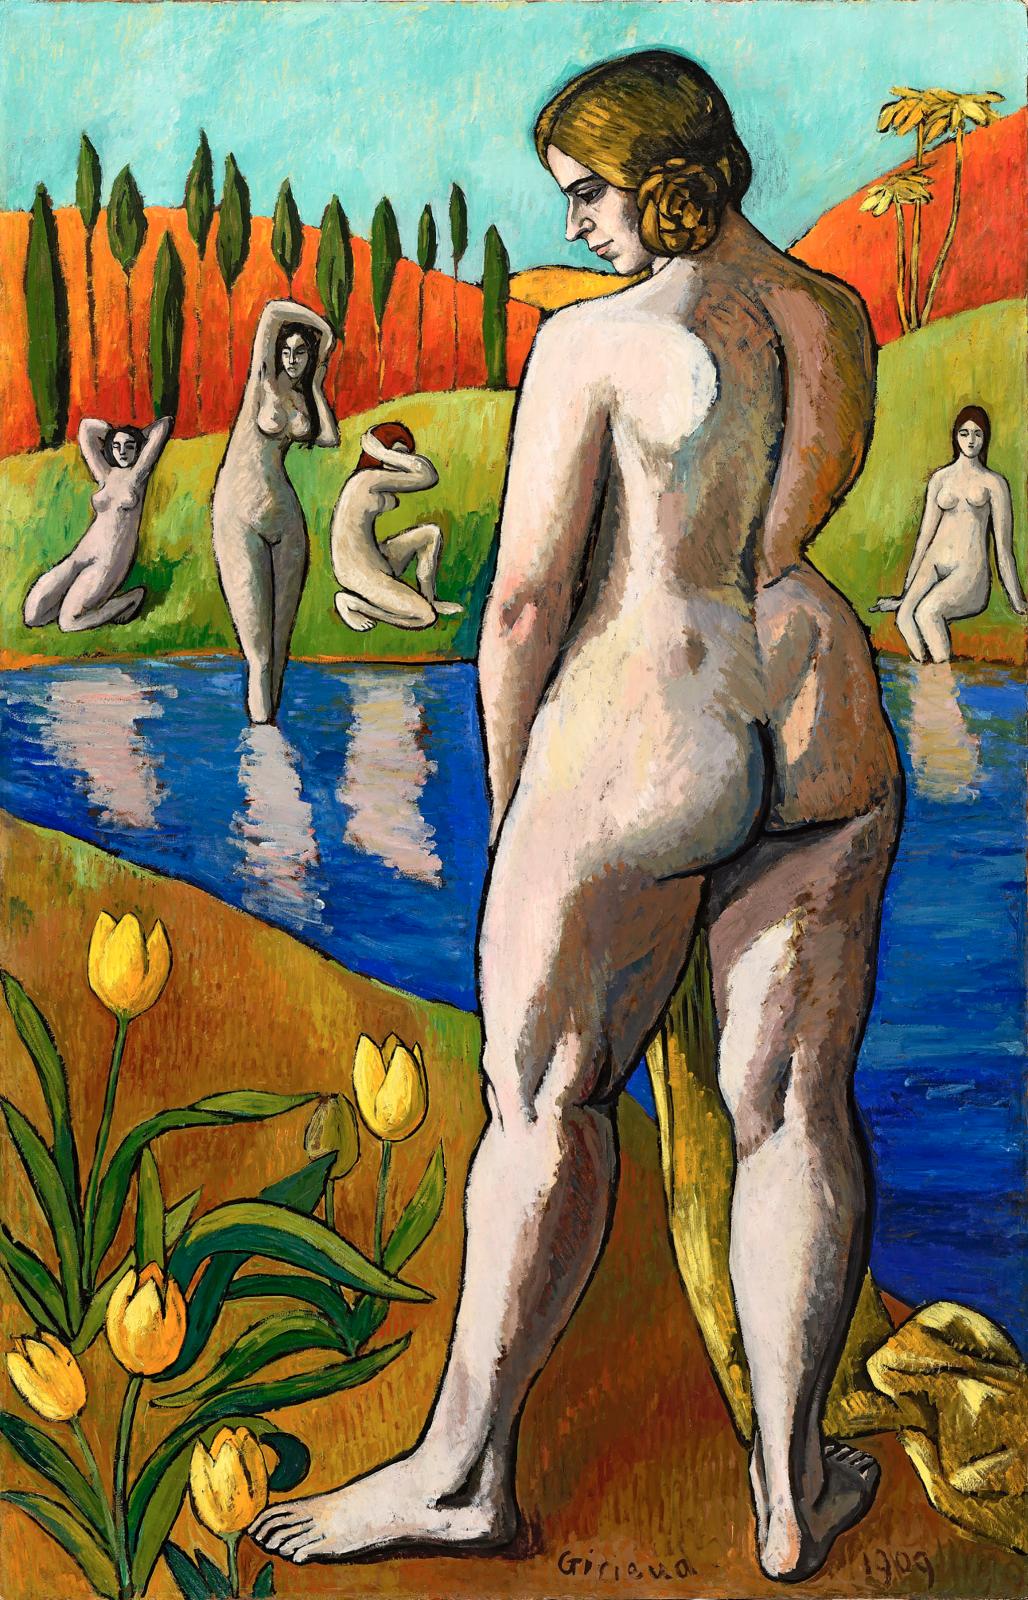 Pierre Girieud (1876-1948), Les Baigneuses, 1909, huile sur carton, 177 x 115 cm (détail). Exposition «Happy Birthday Galerie Pentcheff» à Marseille.